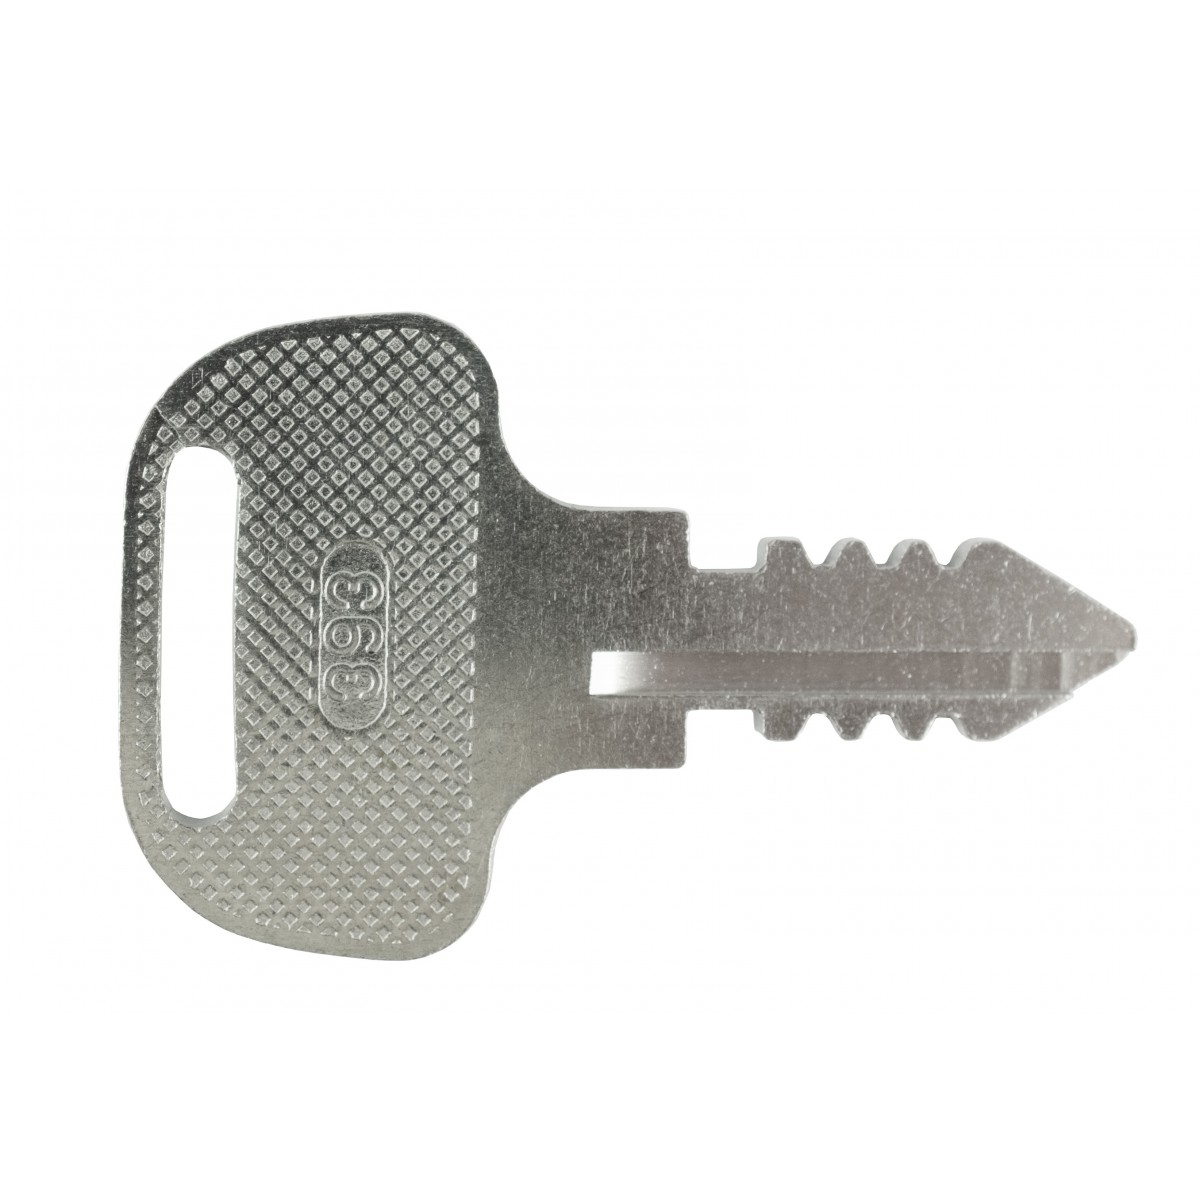 Key, Kubota 393 key for Kubota M Series, 18510-63720 ignition